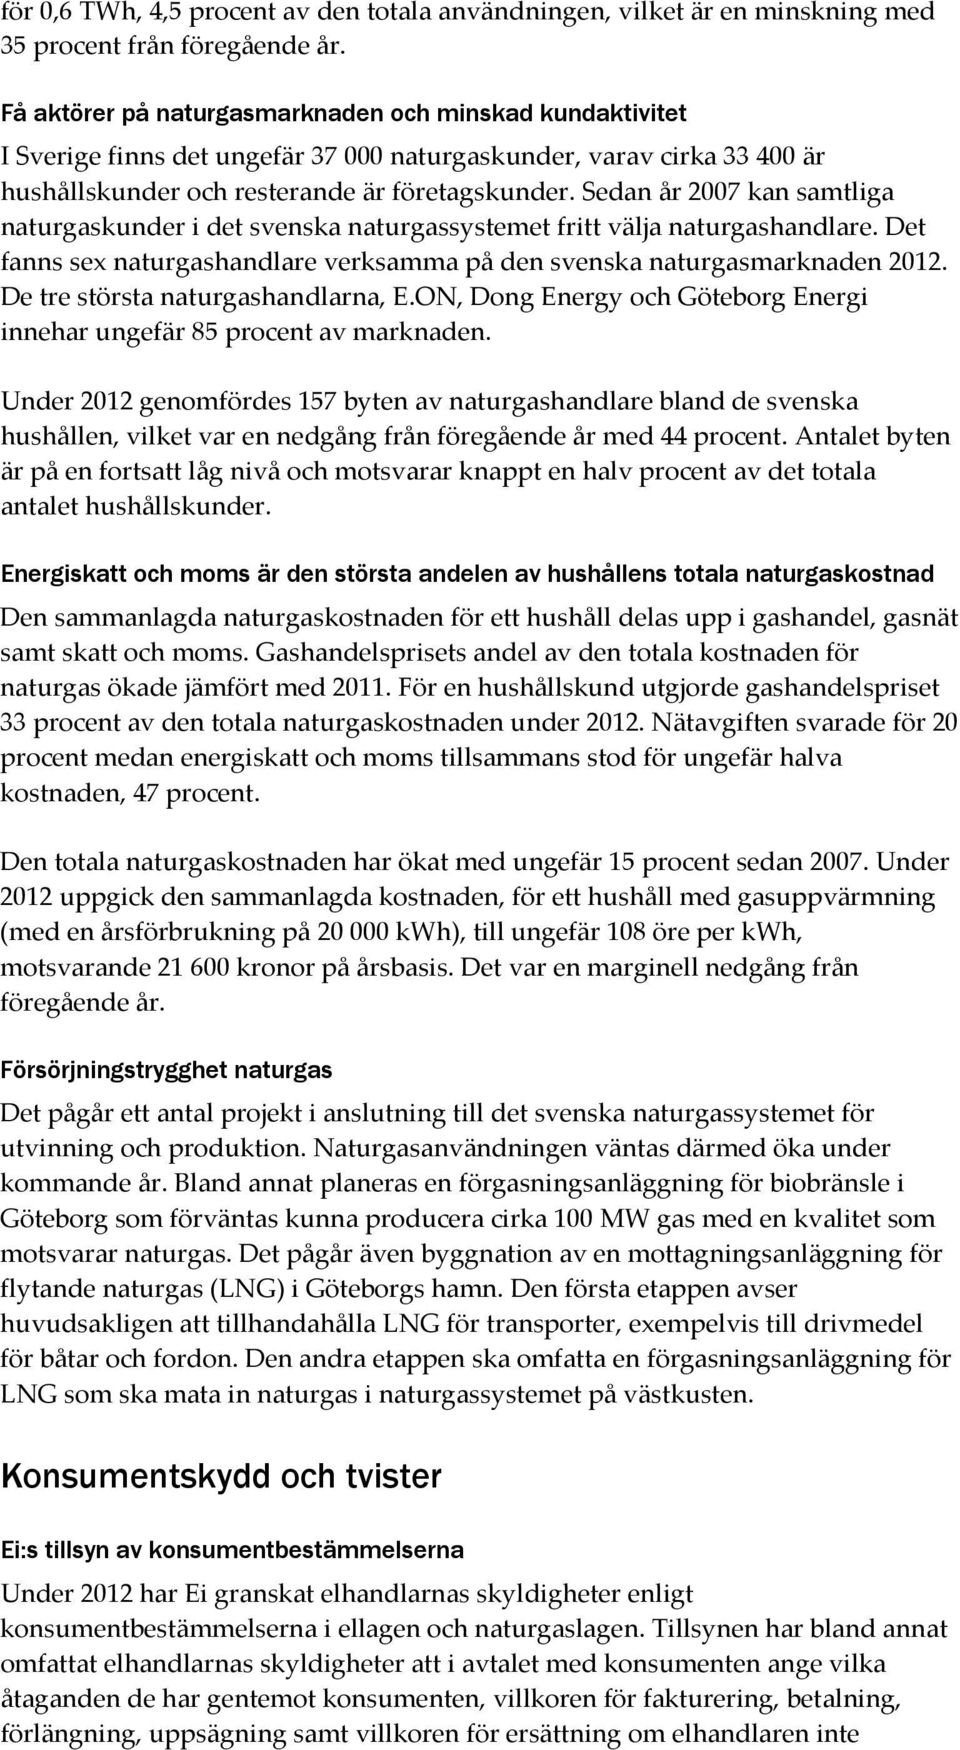 Sedan år 2007 kan samtliga naturgaskunder i det svenska naturgassystemet fritt välja naturgashandlare. Det fanns sex naturgashandlare verksamma på den svenska naturgasmarknaden 2012.